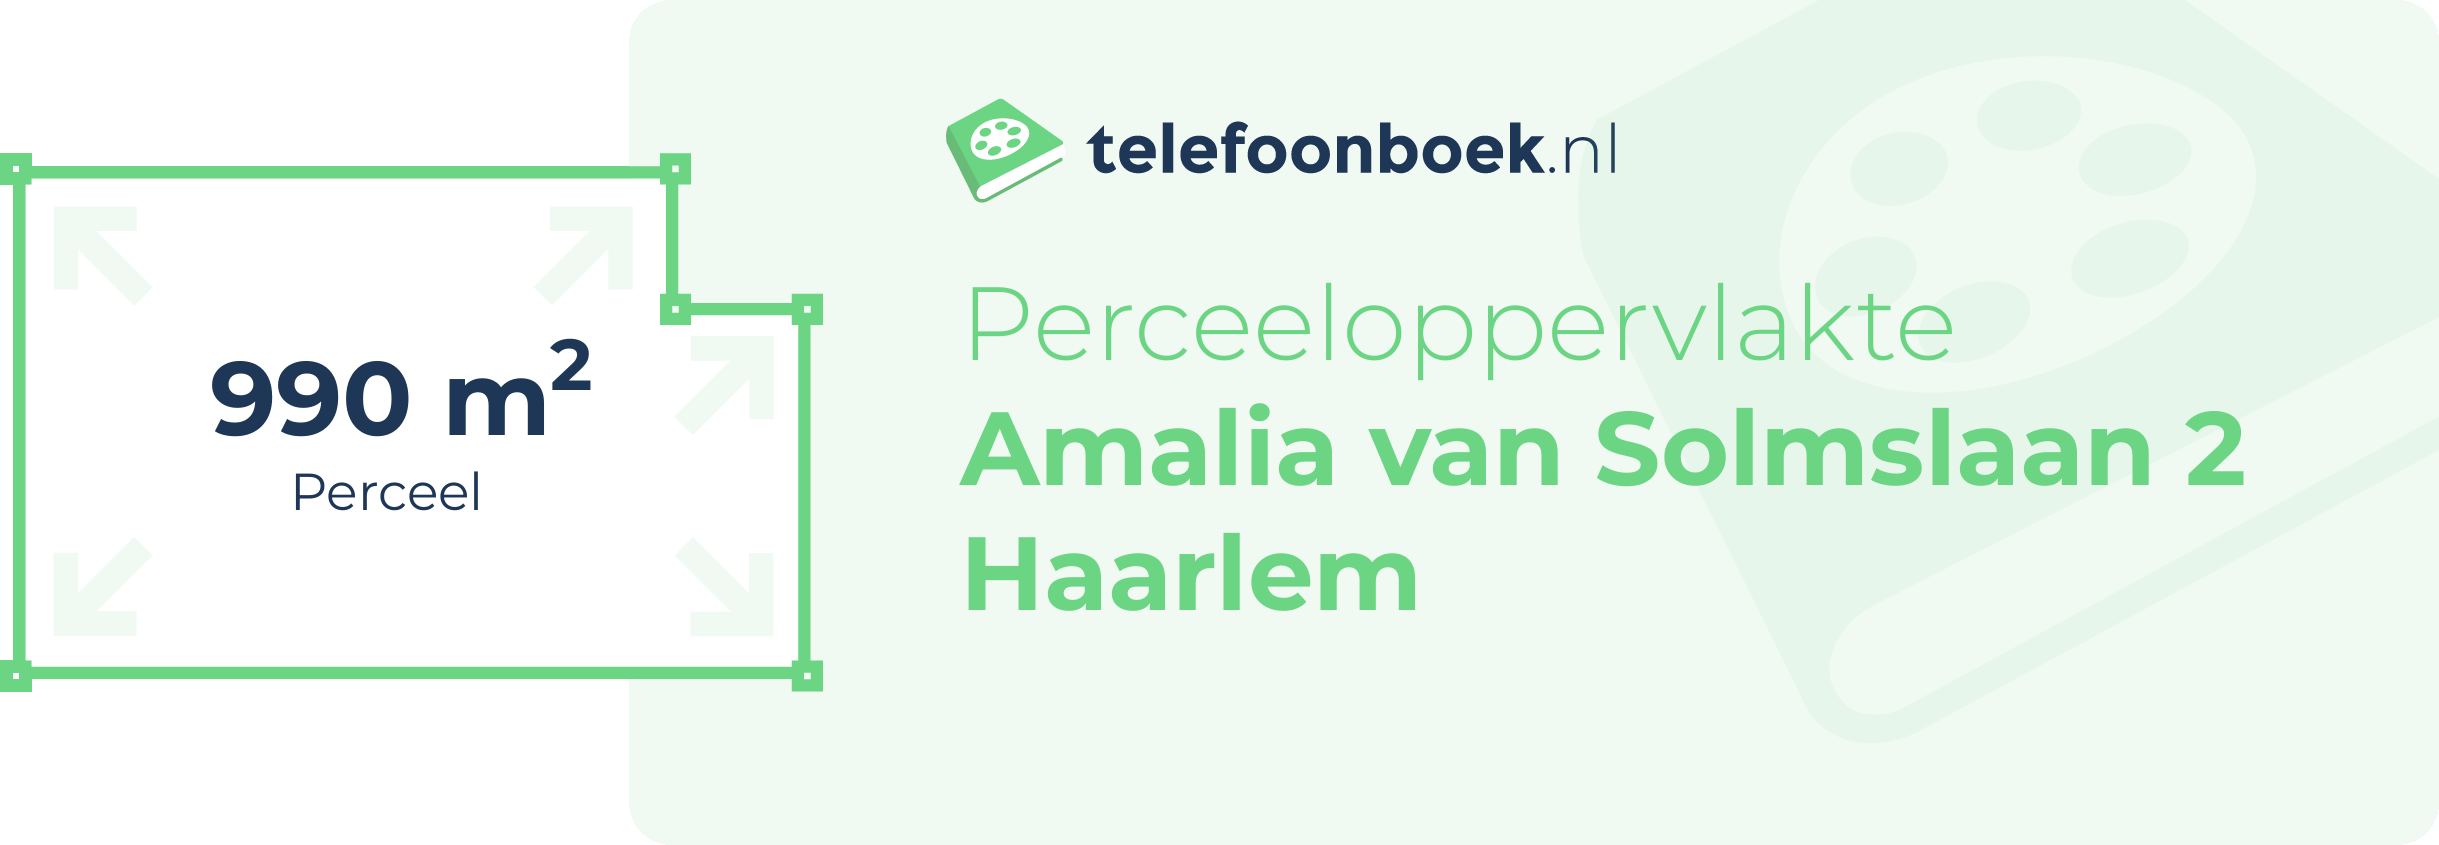 Perceeloppervlakte Amalia Van Solmslaan 2 Haarlem